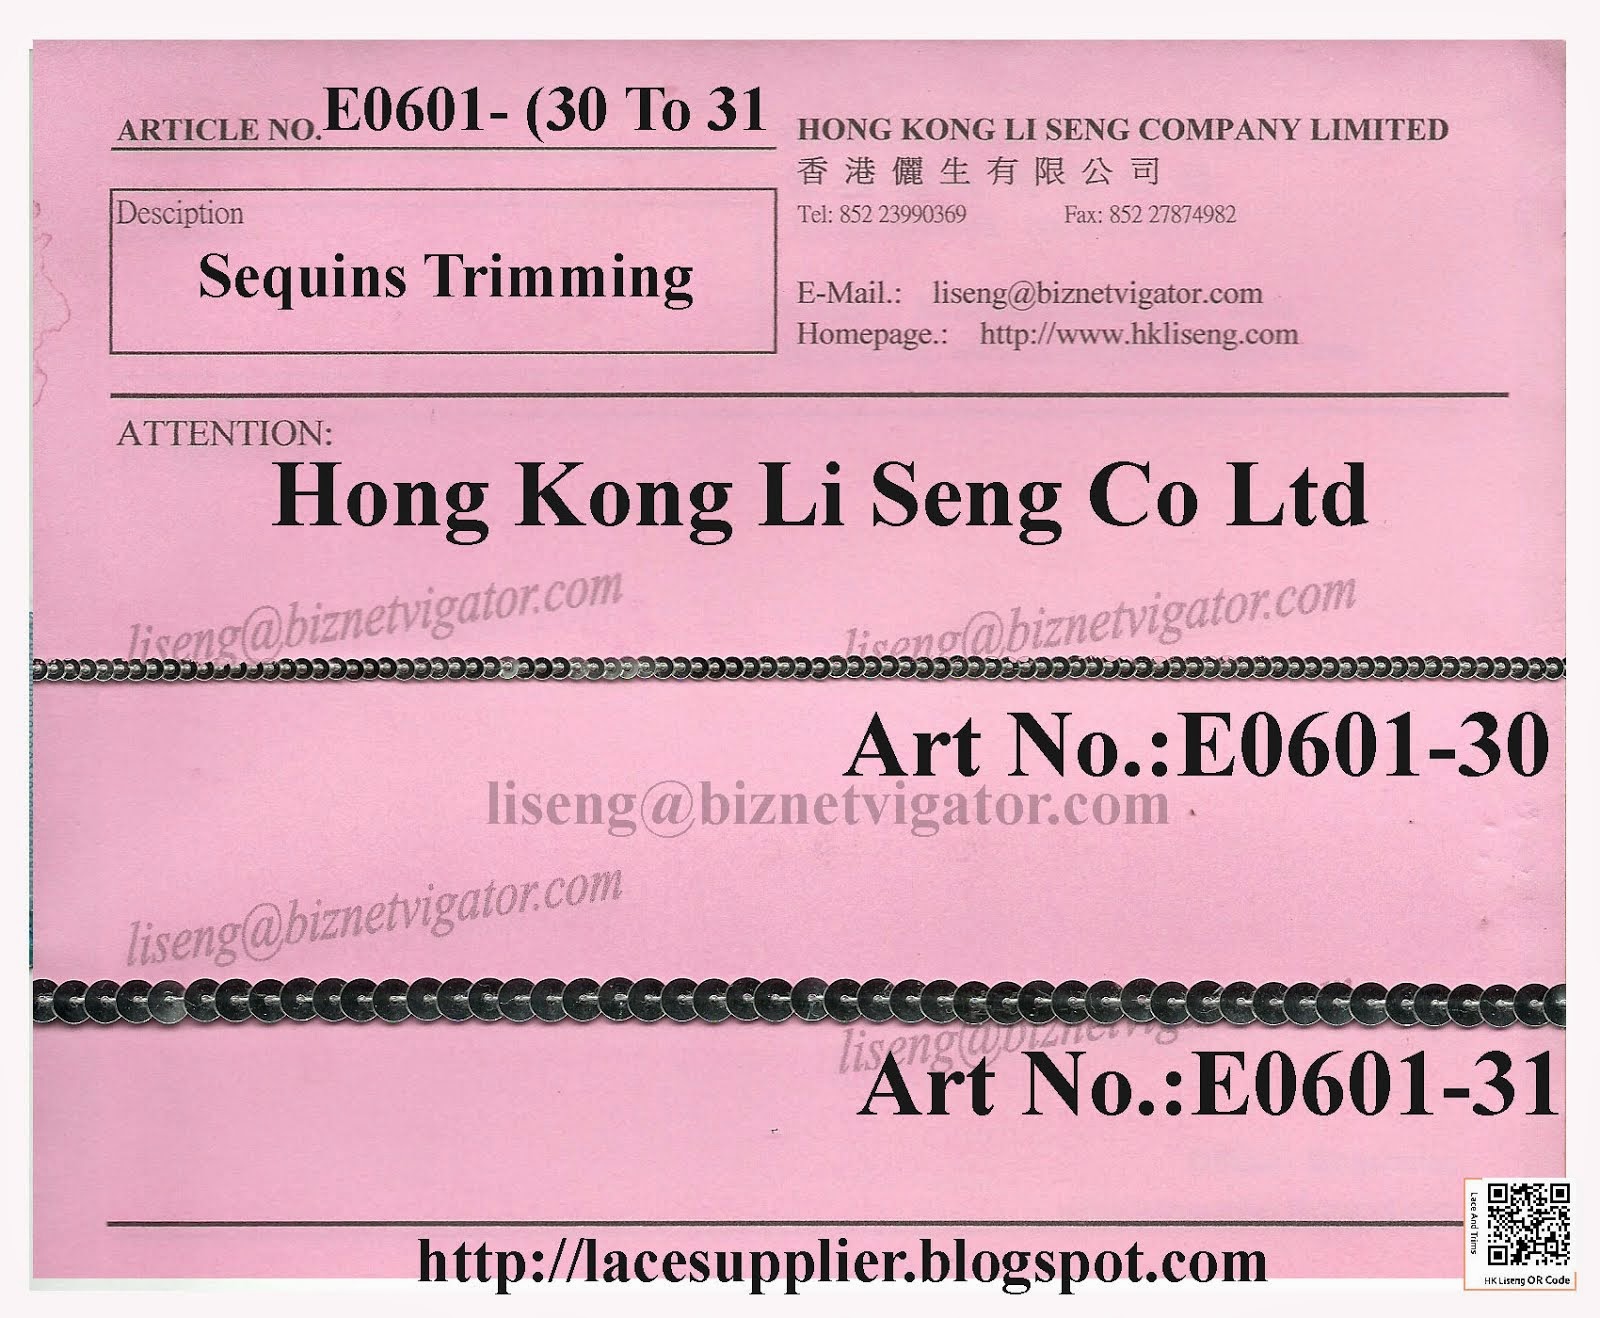 Sequins Trimming Manufacturer - Hong Kong Li Seng Co Ltd